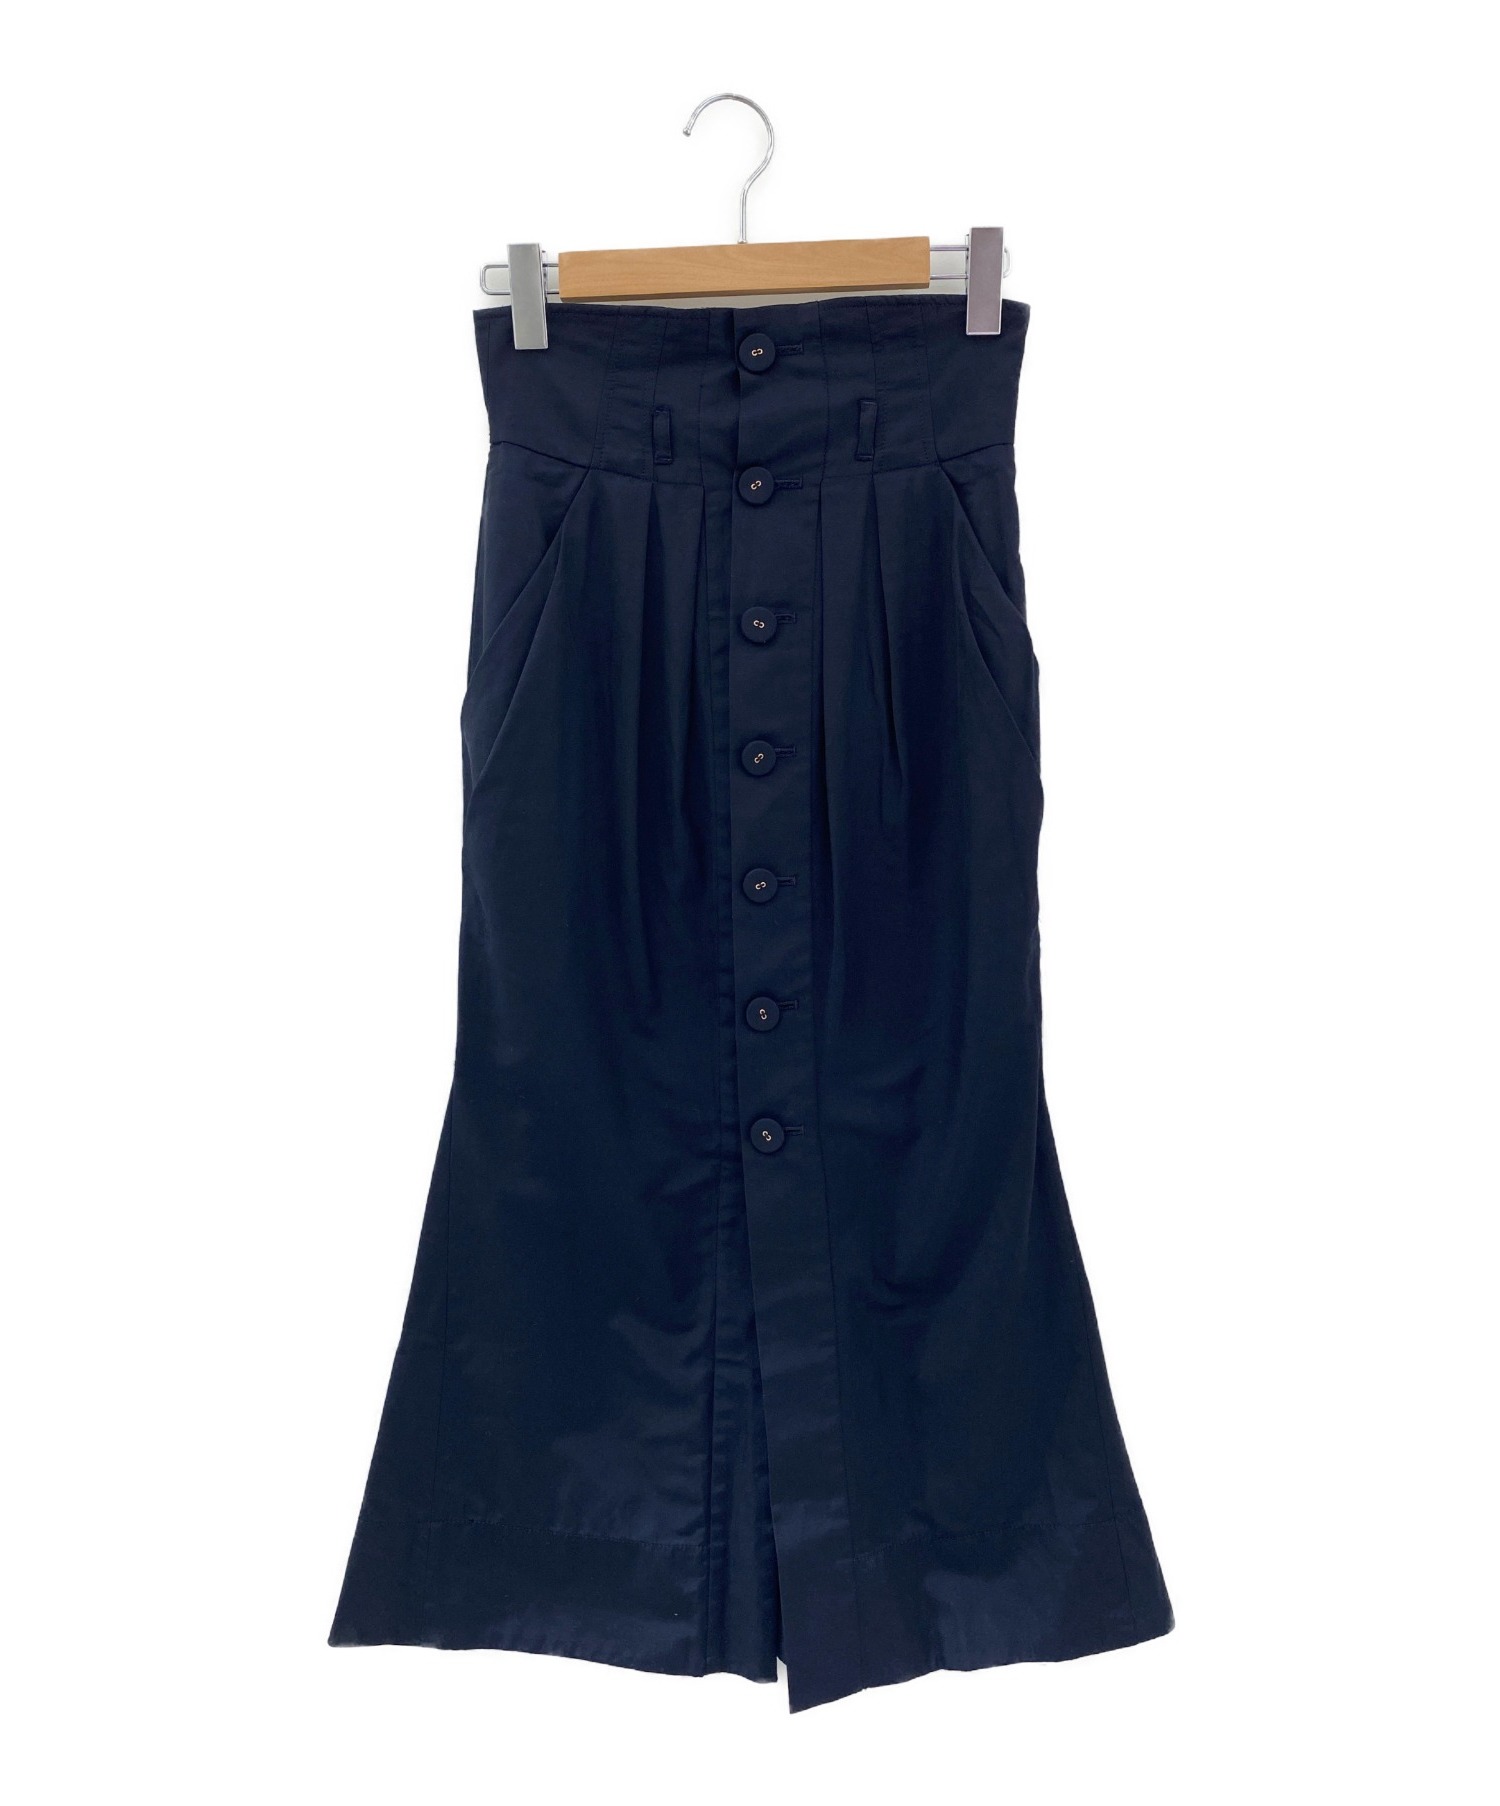 mame kurogouchi スカート ネイビー - ロングスカート